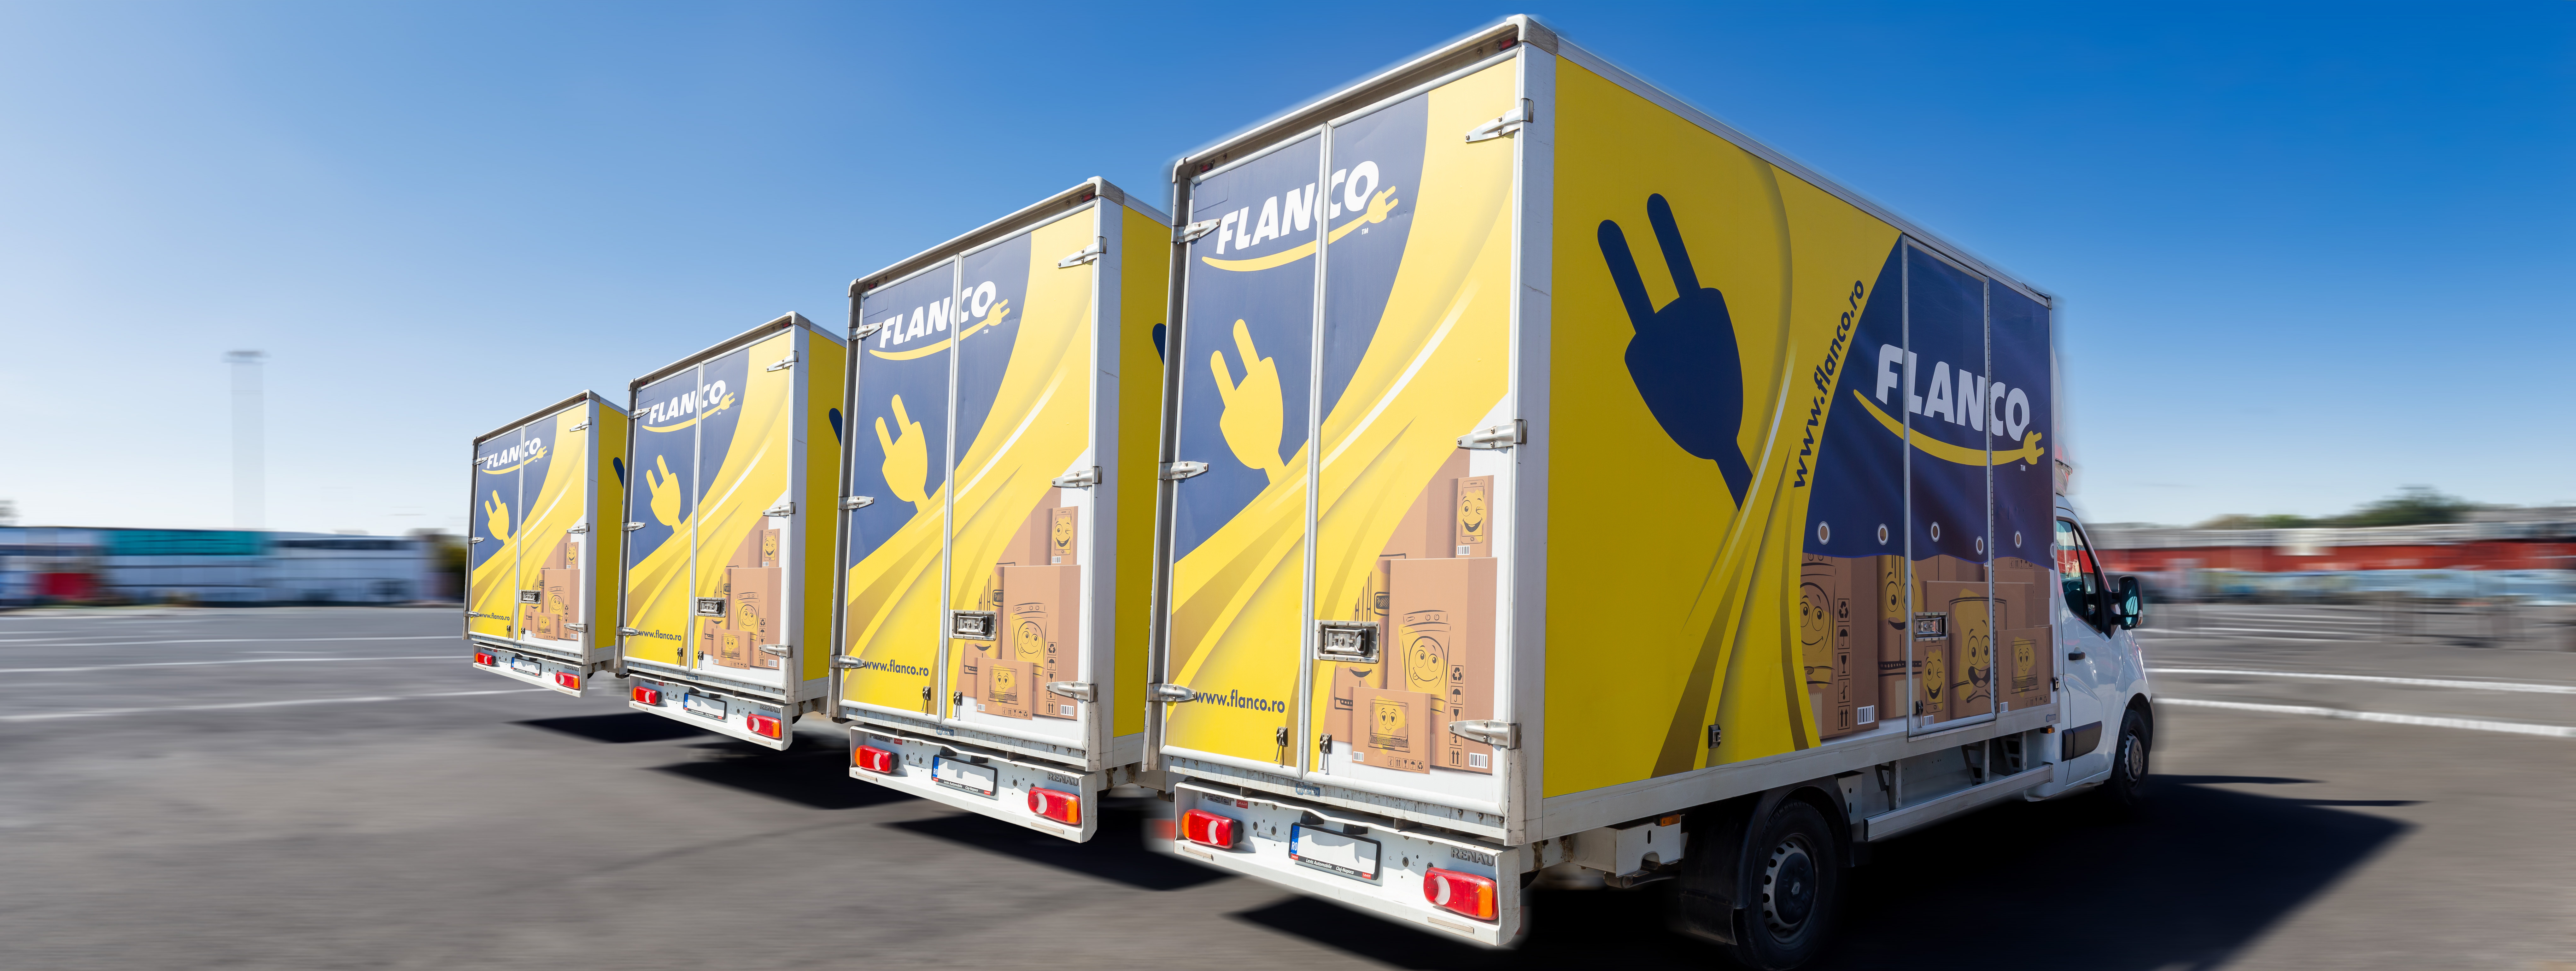 Retailerul electro-IT Flanco foloseşte din luna aprilie propria flotă de maşini pentru livrări, în Bucureşti şi judeţul Ilfov, şi vrea să internalizeze serviciul de livrare şi în alte oraşe